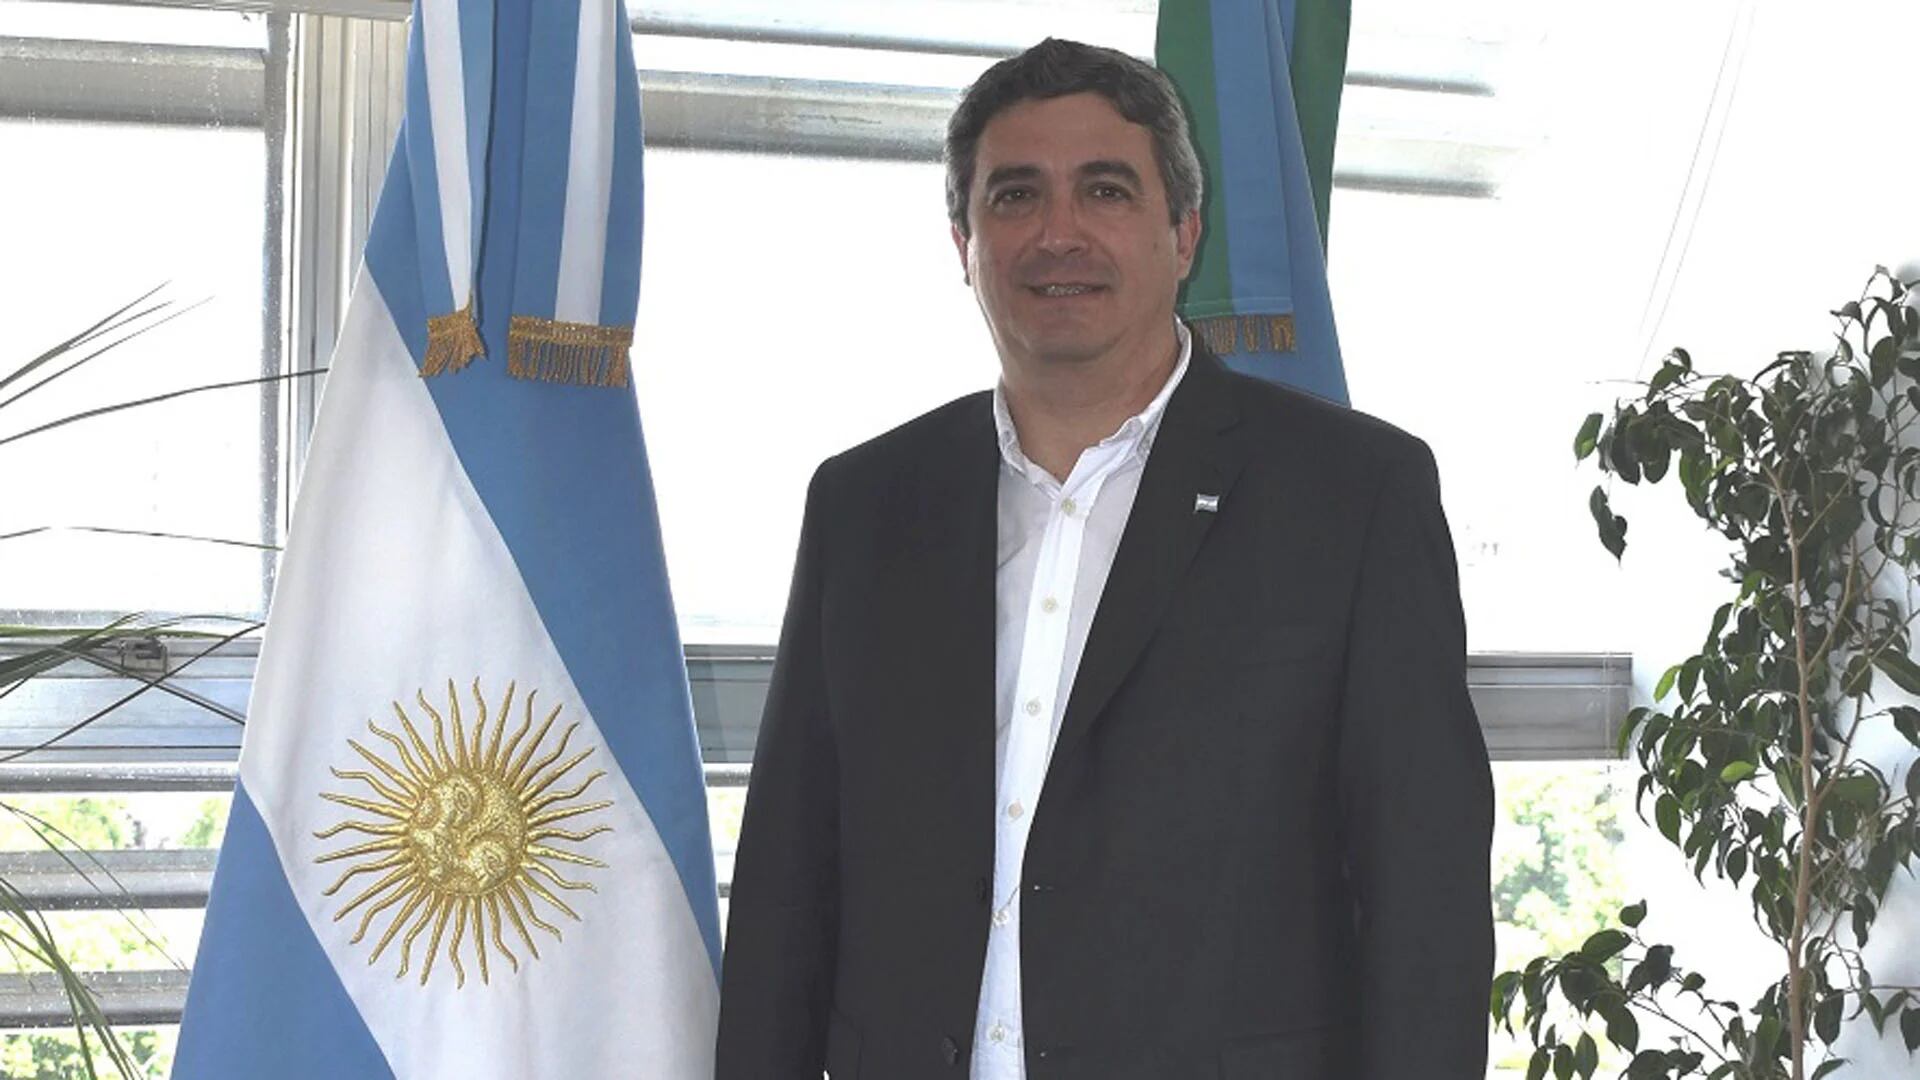 El ministro de Desarrollo Agrario de la provincia de Buenos Aires, Javier Rodríguez, explicó los lineamientos de las medidas que se aplicarán en materia de agroquímicos, y además se refirió a las protestas de los productores agropecuarios